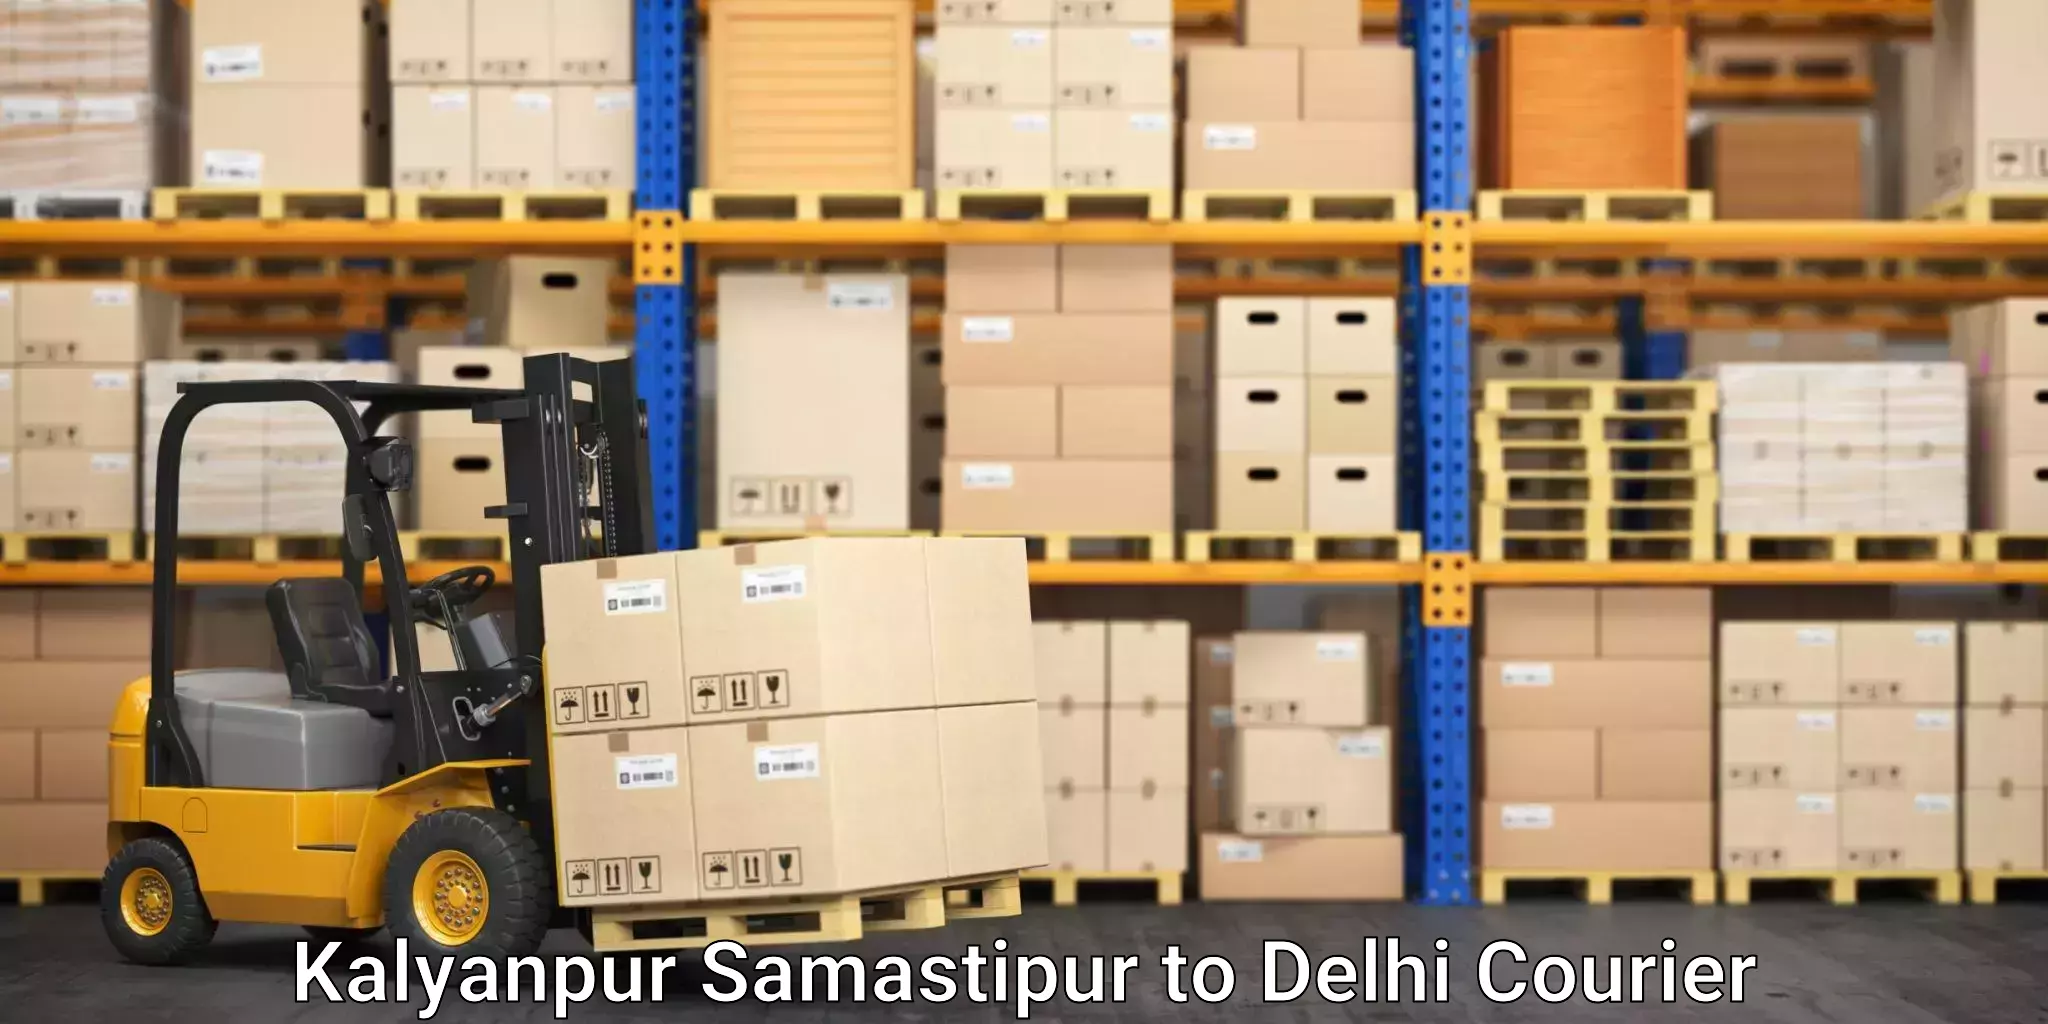 Skilled furniture movers in Kalyanpur Samastipur to Sarojini Nagar